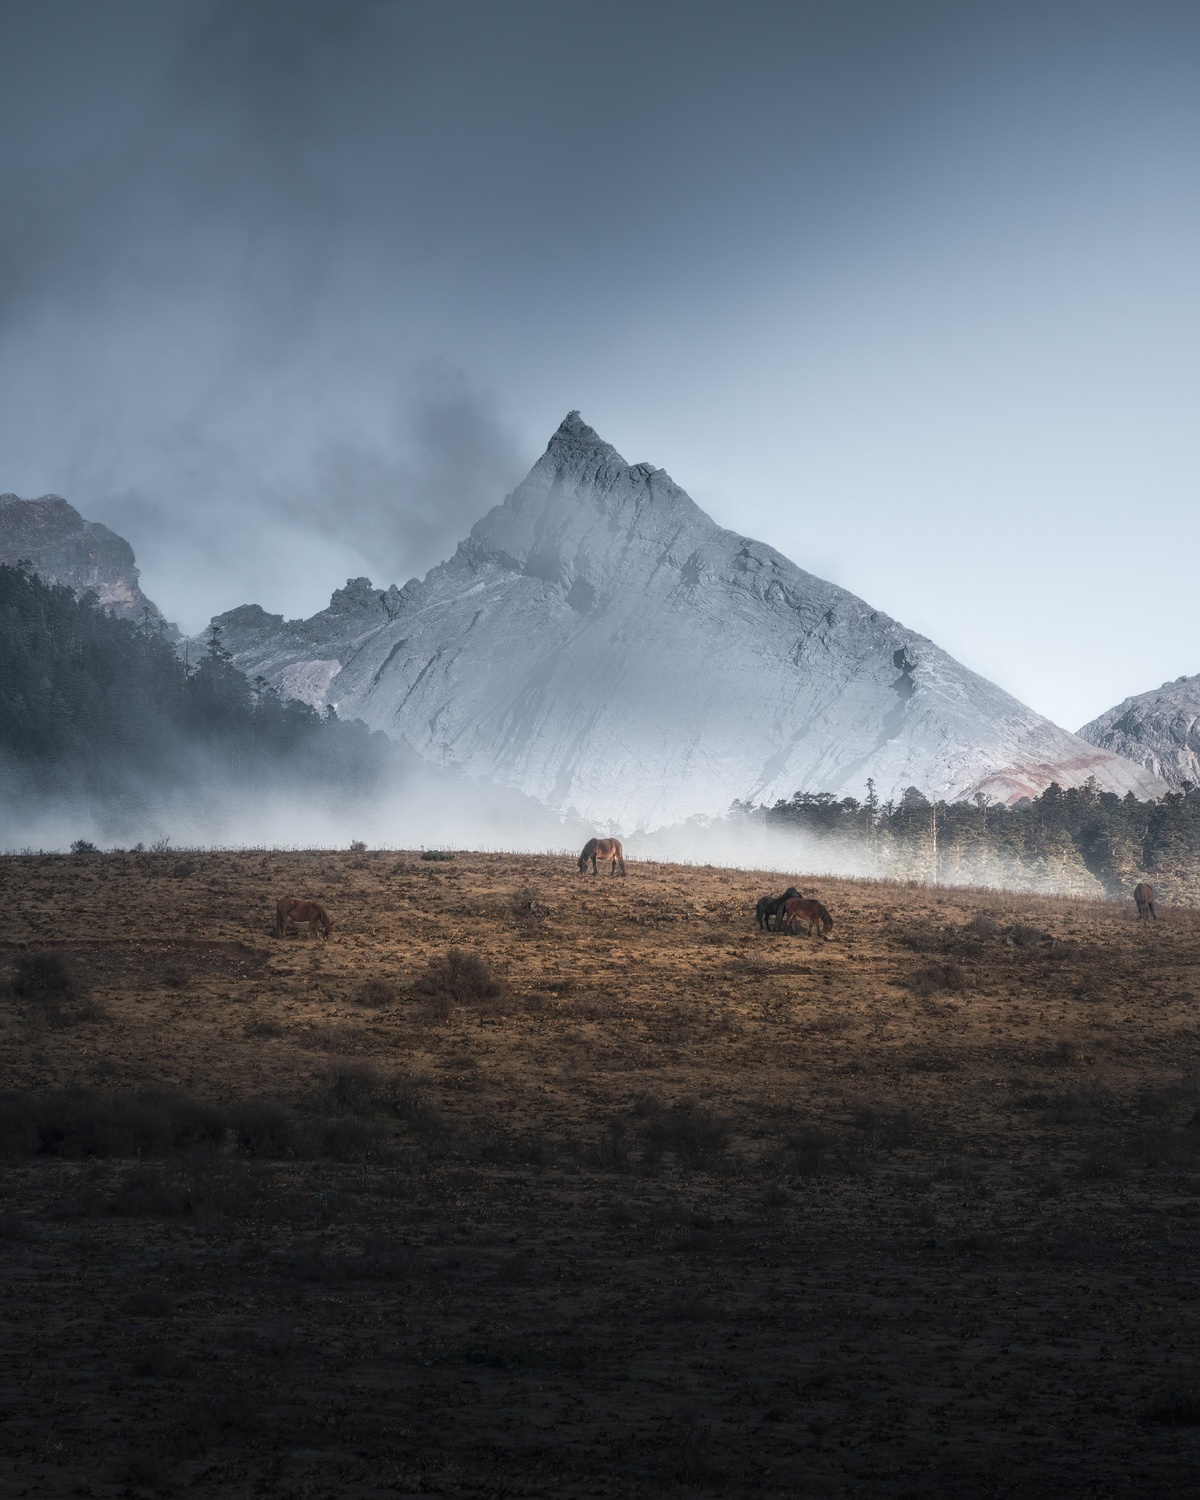 雾中牧马 背景是山。